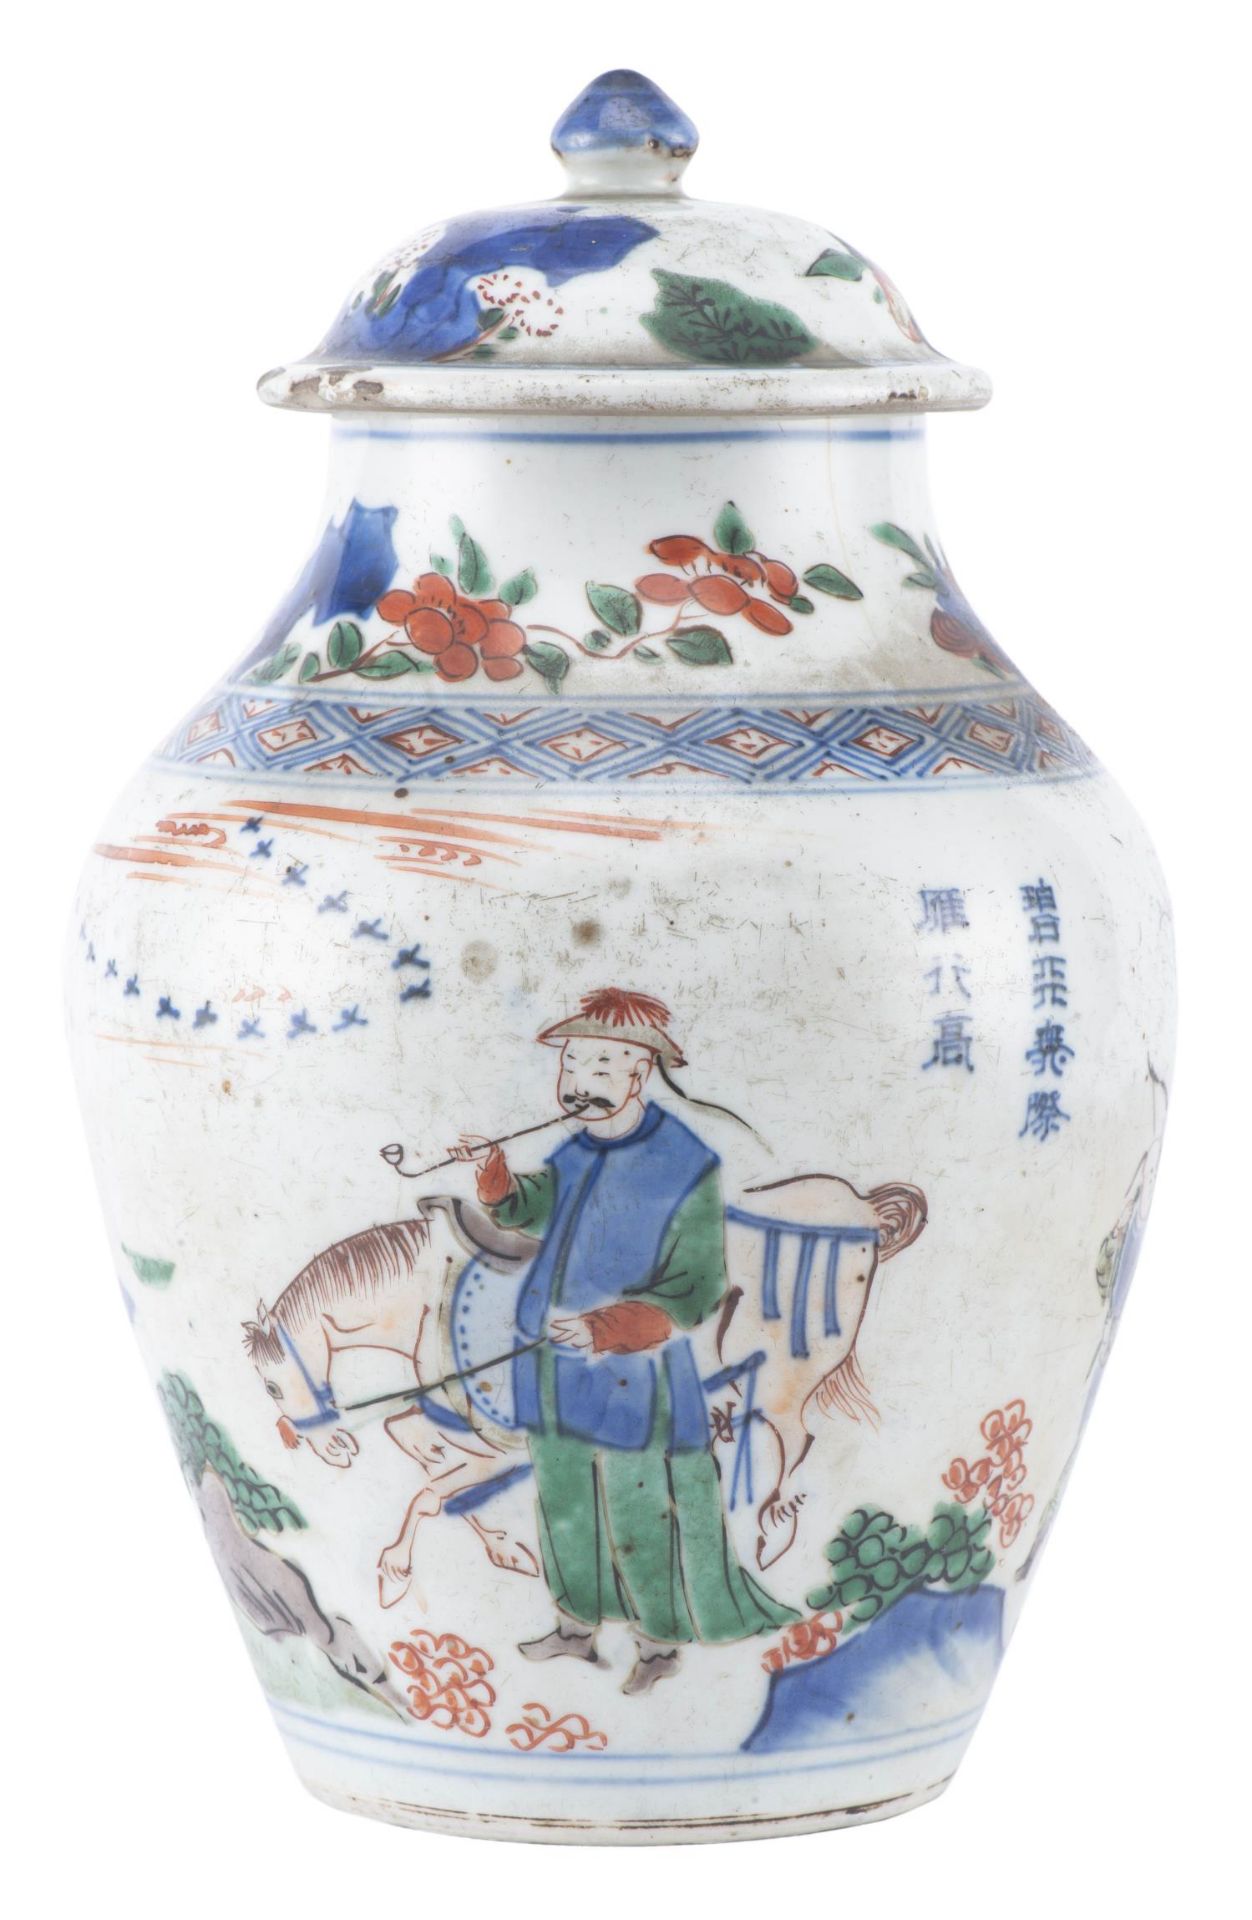 Jarre en porcelaine de Chine à décor en Wucai, Epoque Qing, Shunzhi/début Kangxi circa 1650-65 - Image 2 of 24